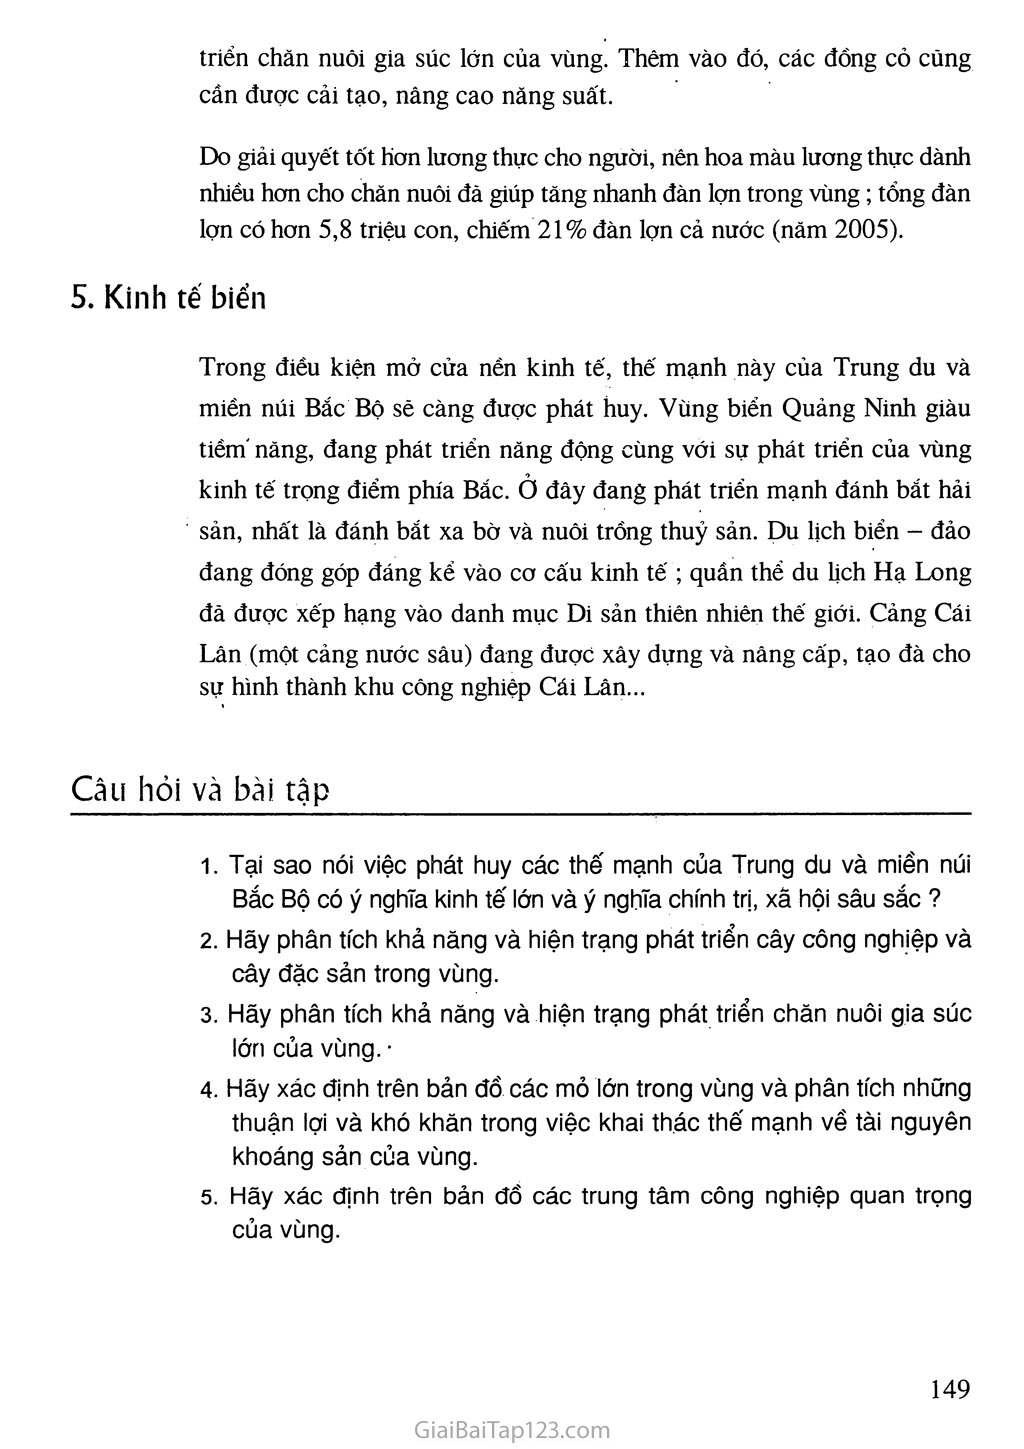 Bài 32. Vấn đề khai thác thế mạnh ở Trung du và miền núi Bắc Bộ trang 5